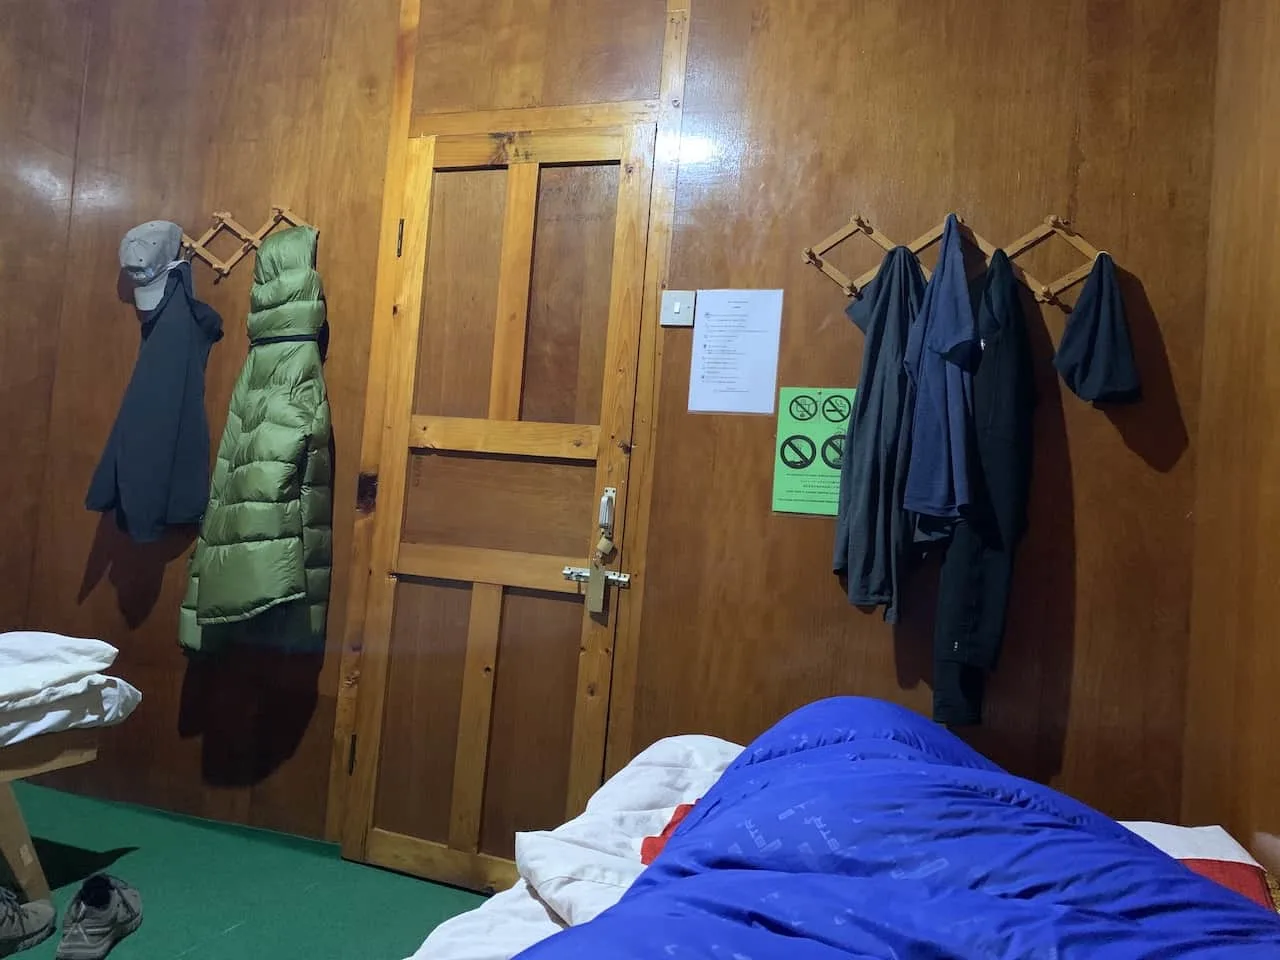 Clothing Layers Everest Base Camp